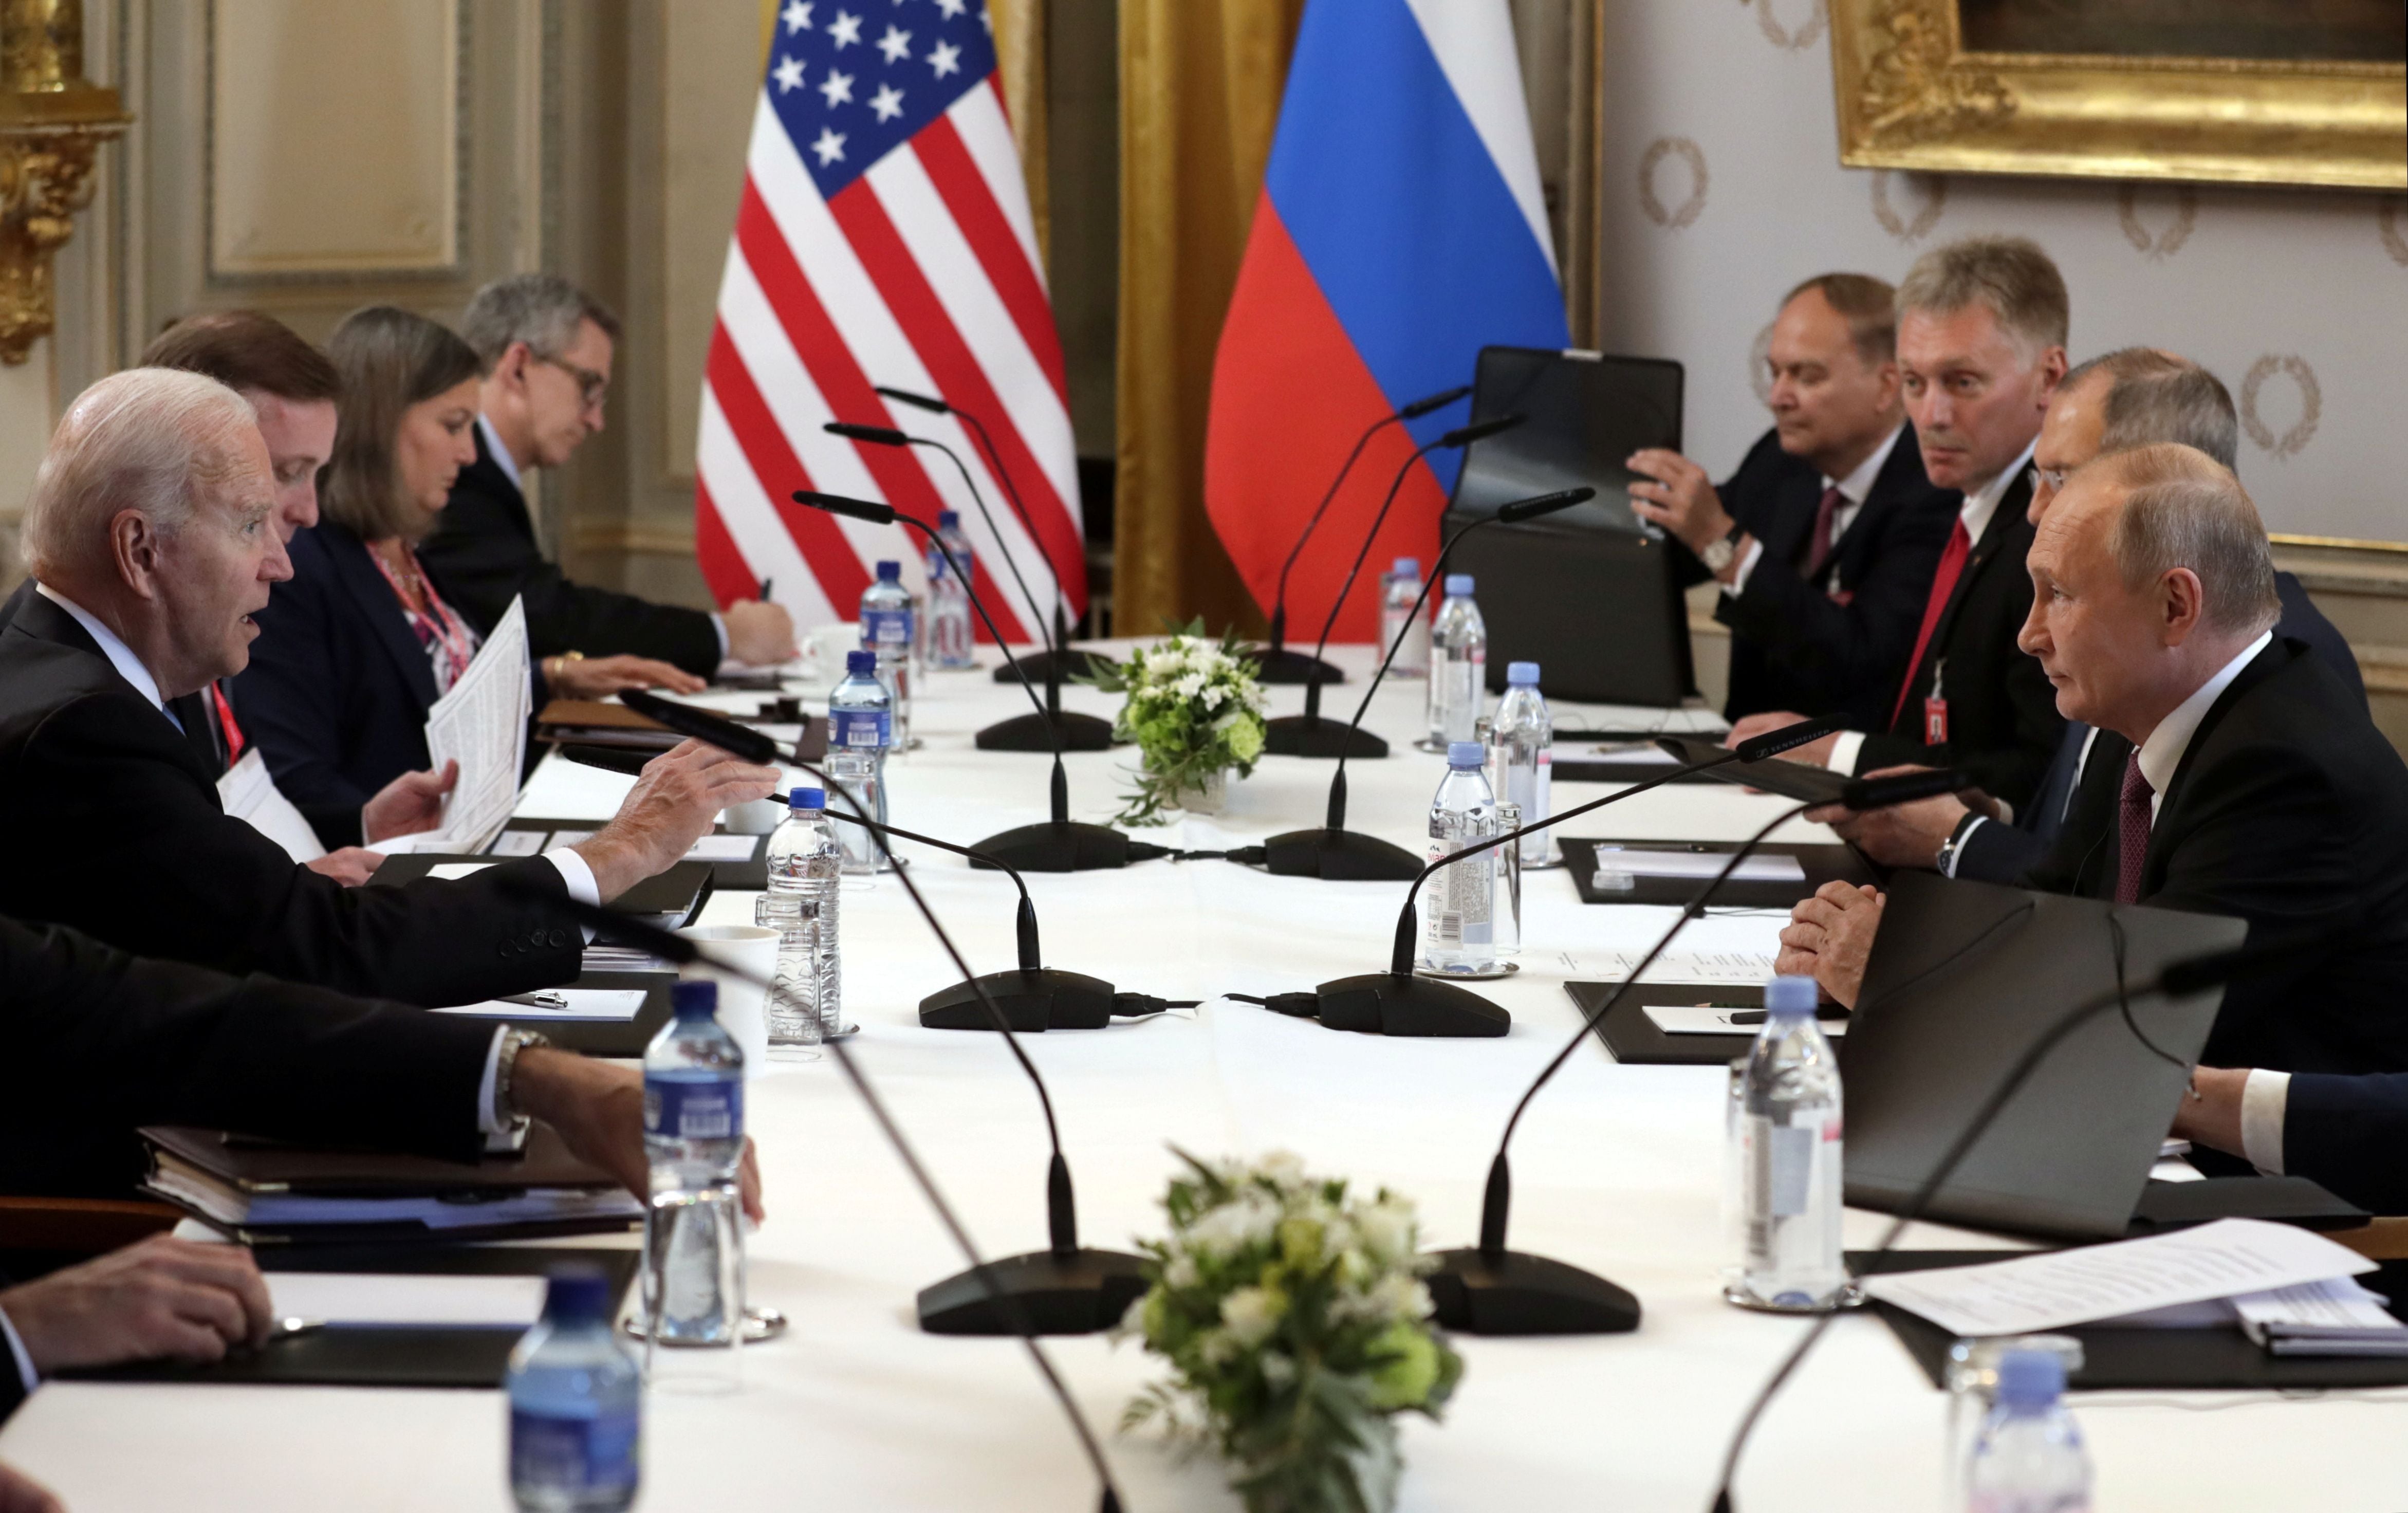 La reunión de Joe Biden y su equipo con Vladimir Putin y sus asesores en Villa La Grange de Ginebra, Suiza, el 16 de junio de 2021 (Sputnik/Mikhail Metzel/Pool via REUTERS)